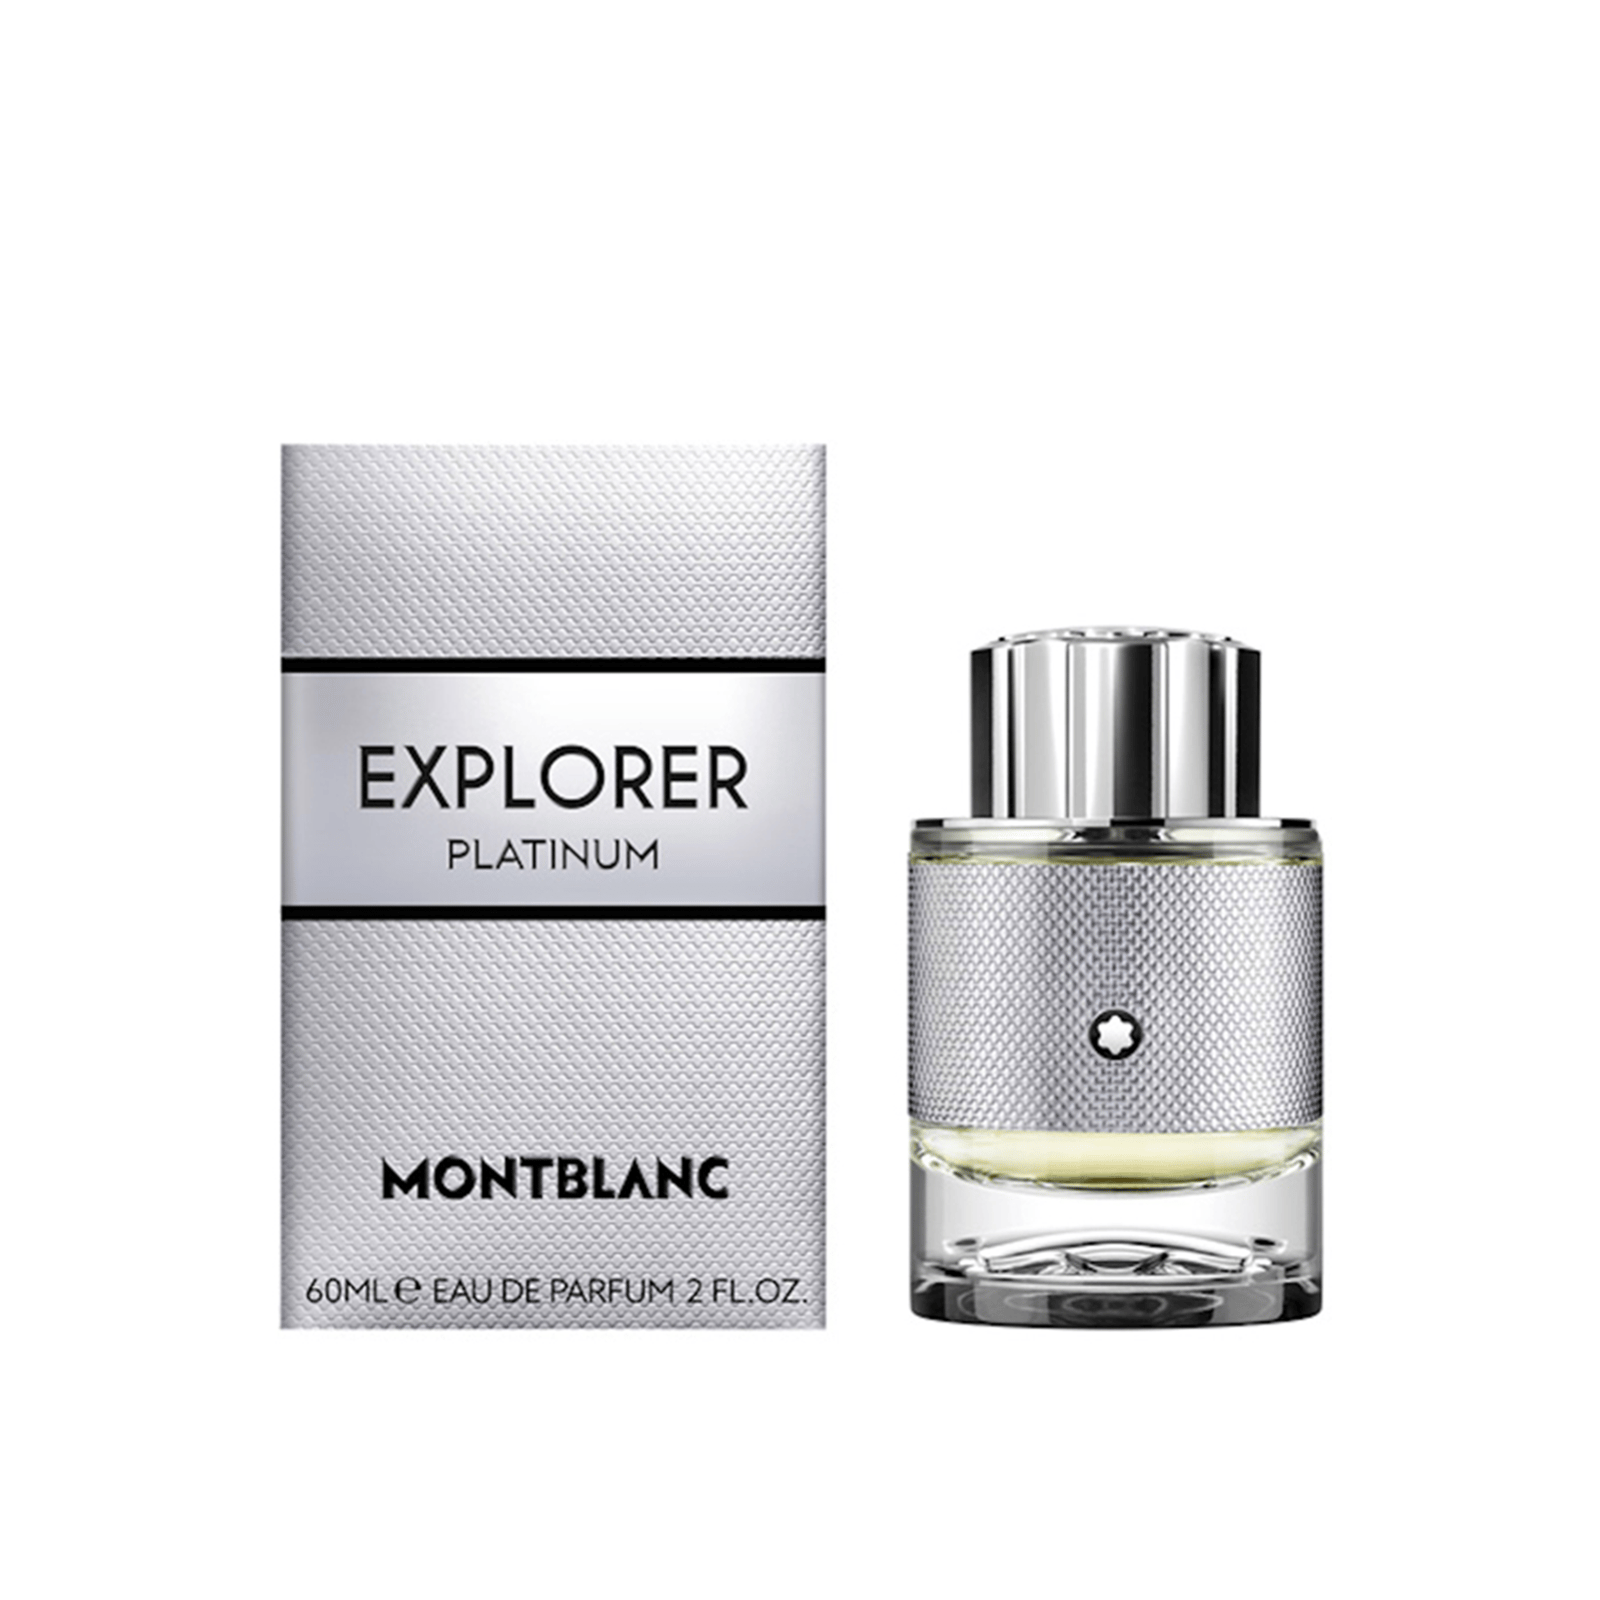 Montblanc Explorer Platinum Eau de Parfum 60ml (2 fl oz)